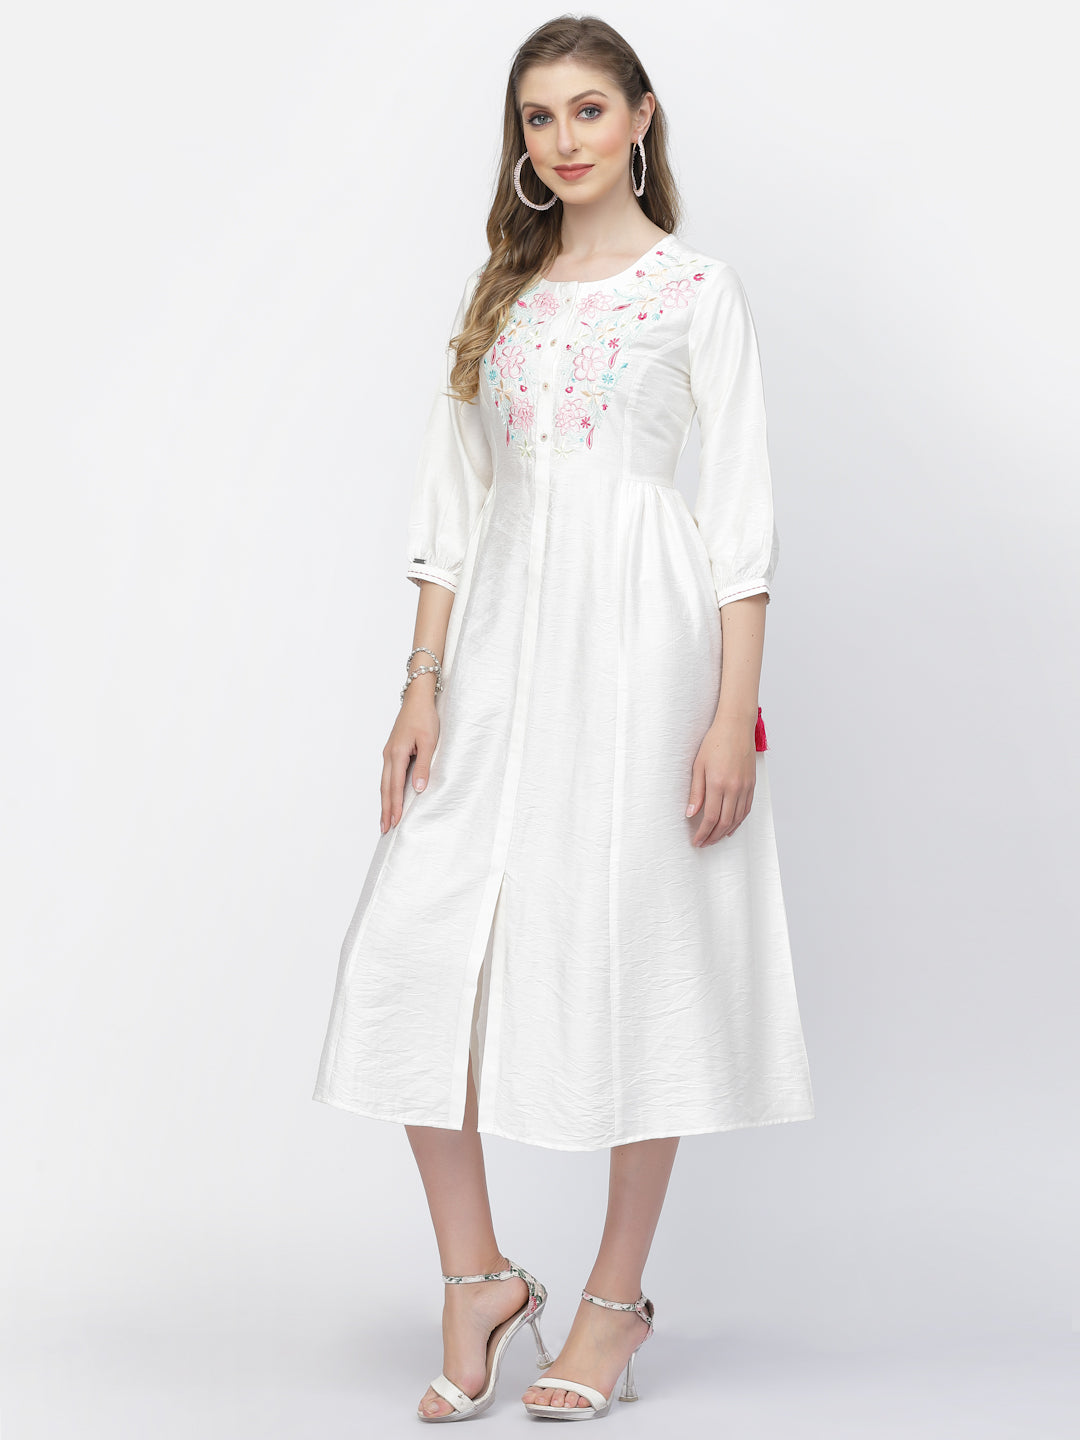 Soft Viscose Silk Embroidered Long Summer Dress - ARH1509